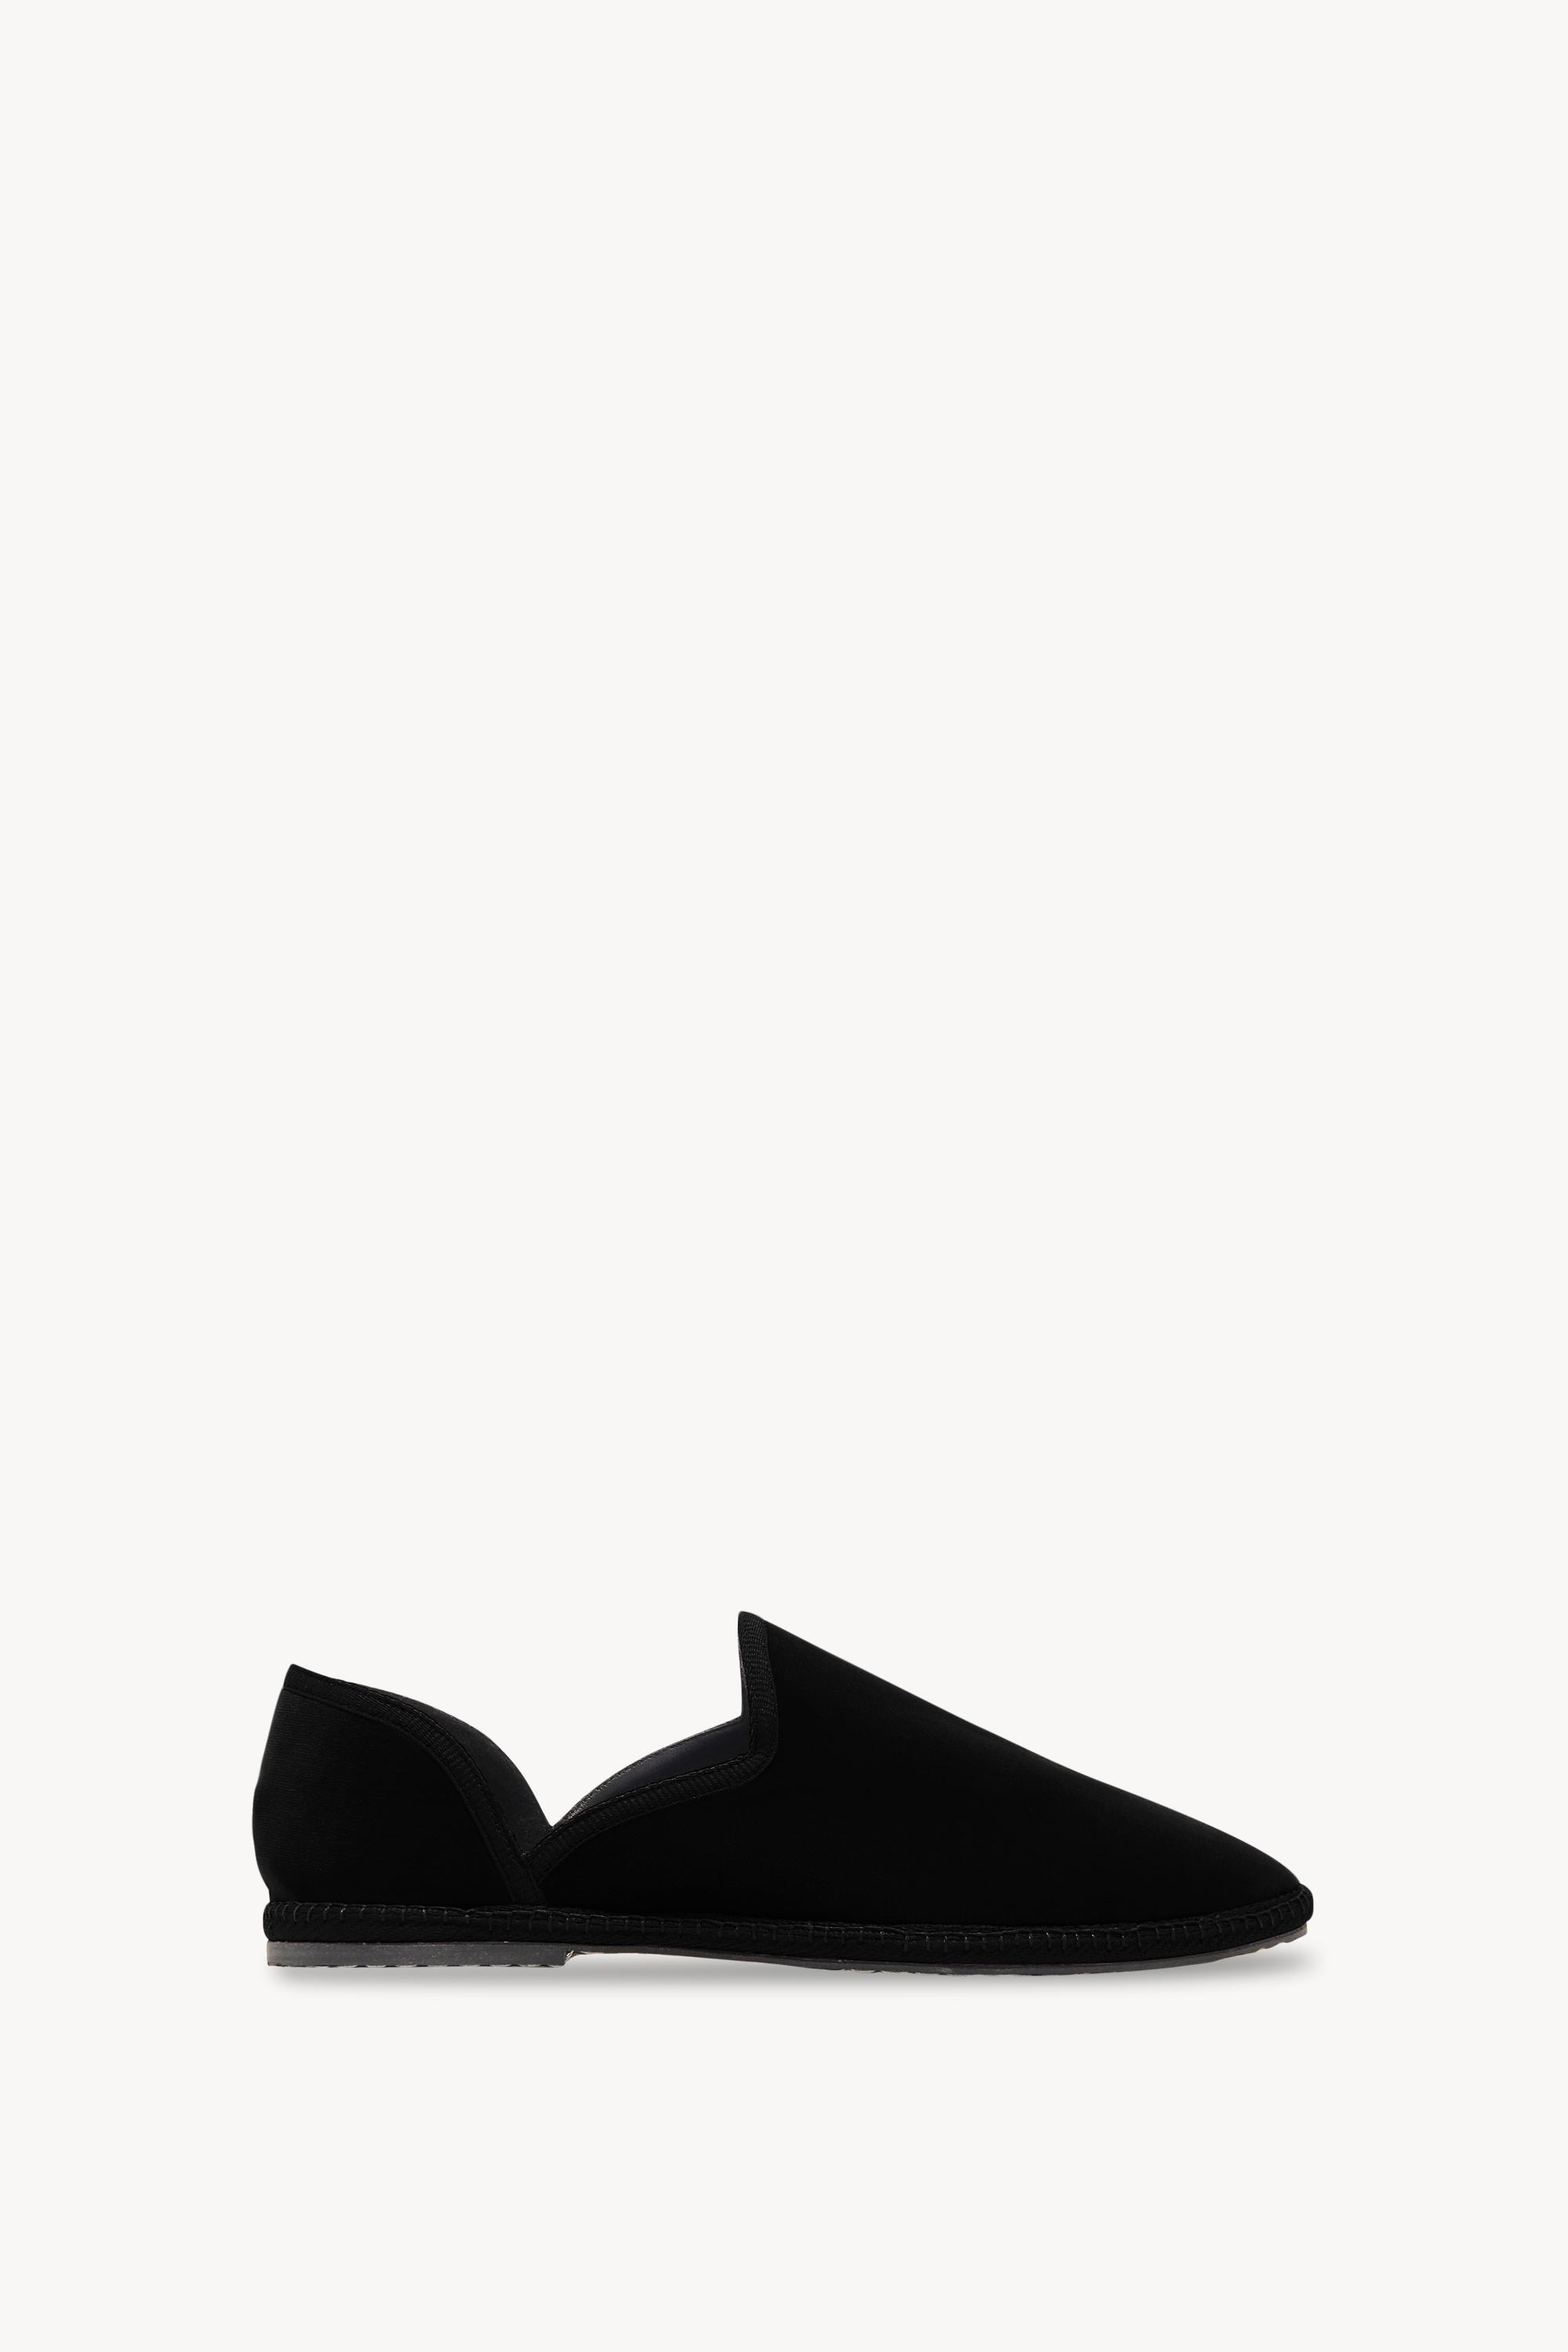 The Row Friulane Shoe In Velvet in Black - Lyst